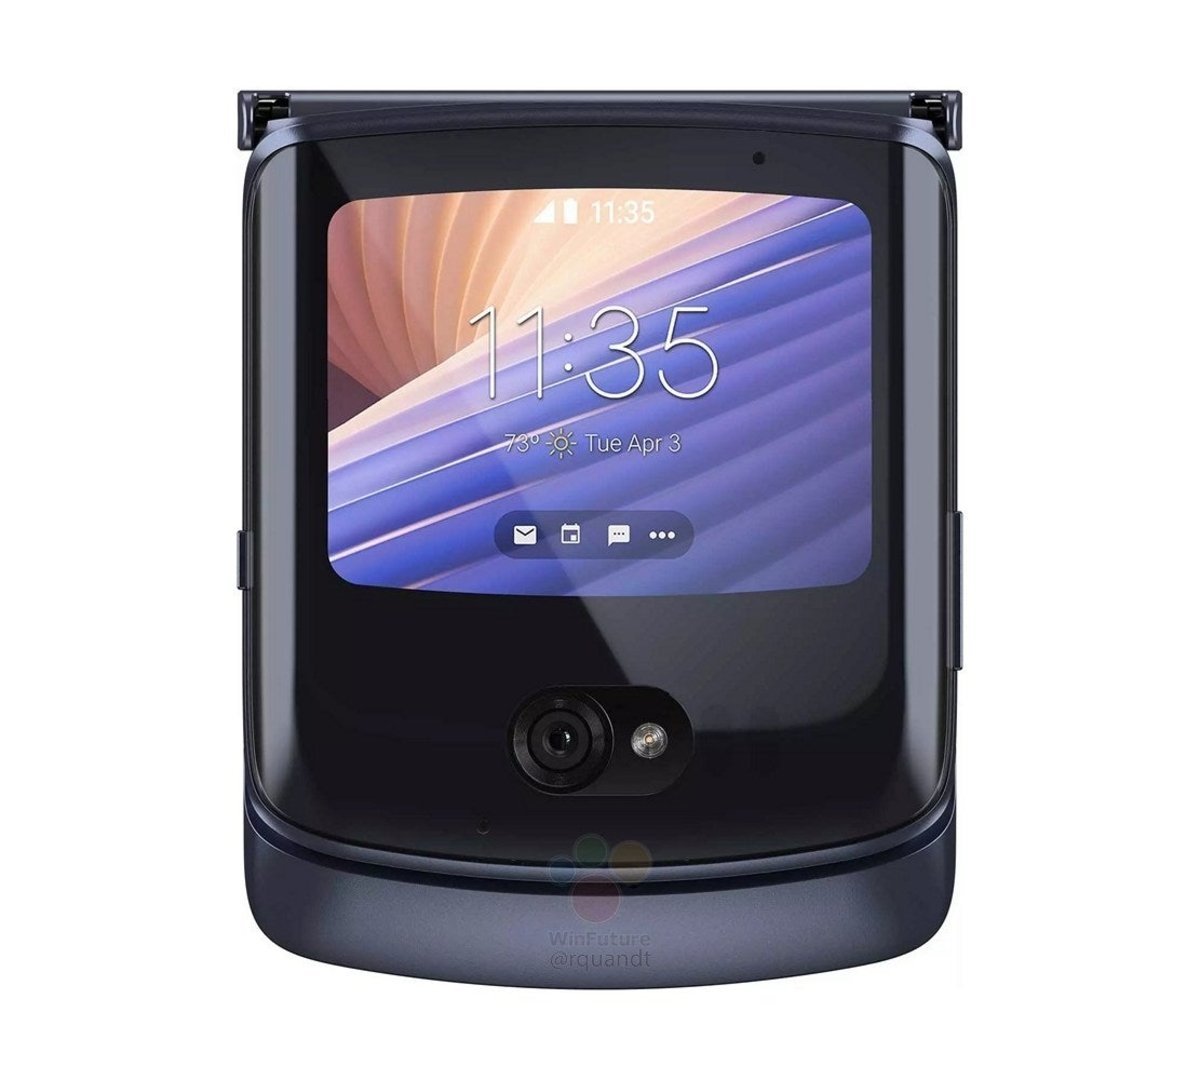 Pantalla externa del Motorola RAZR 2020